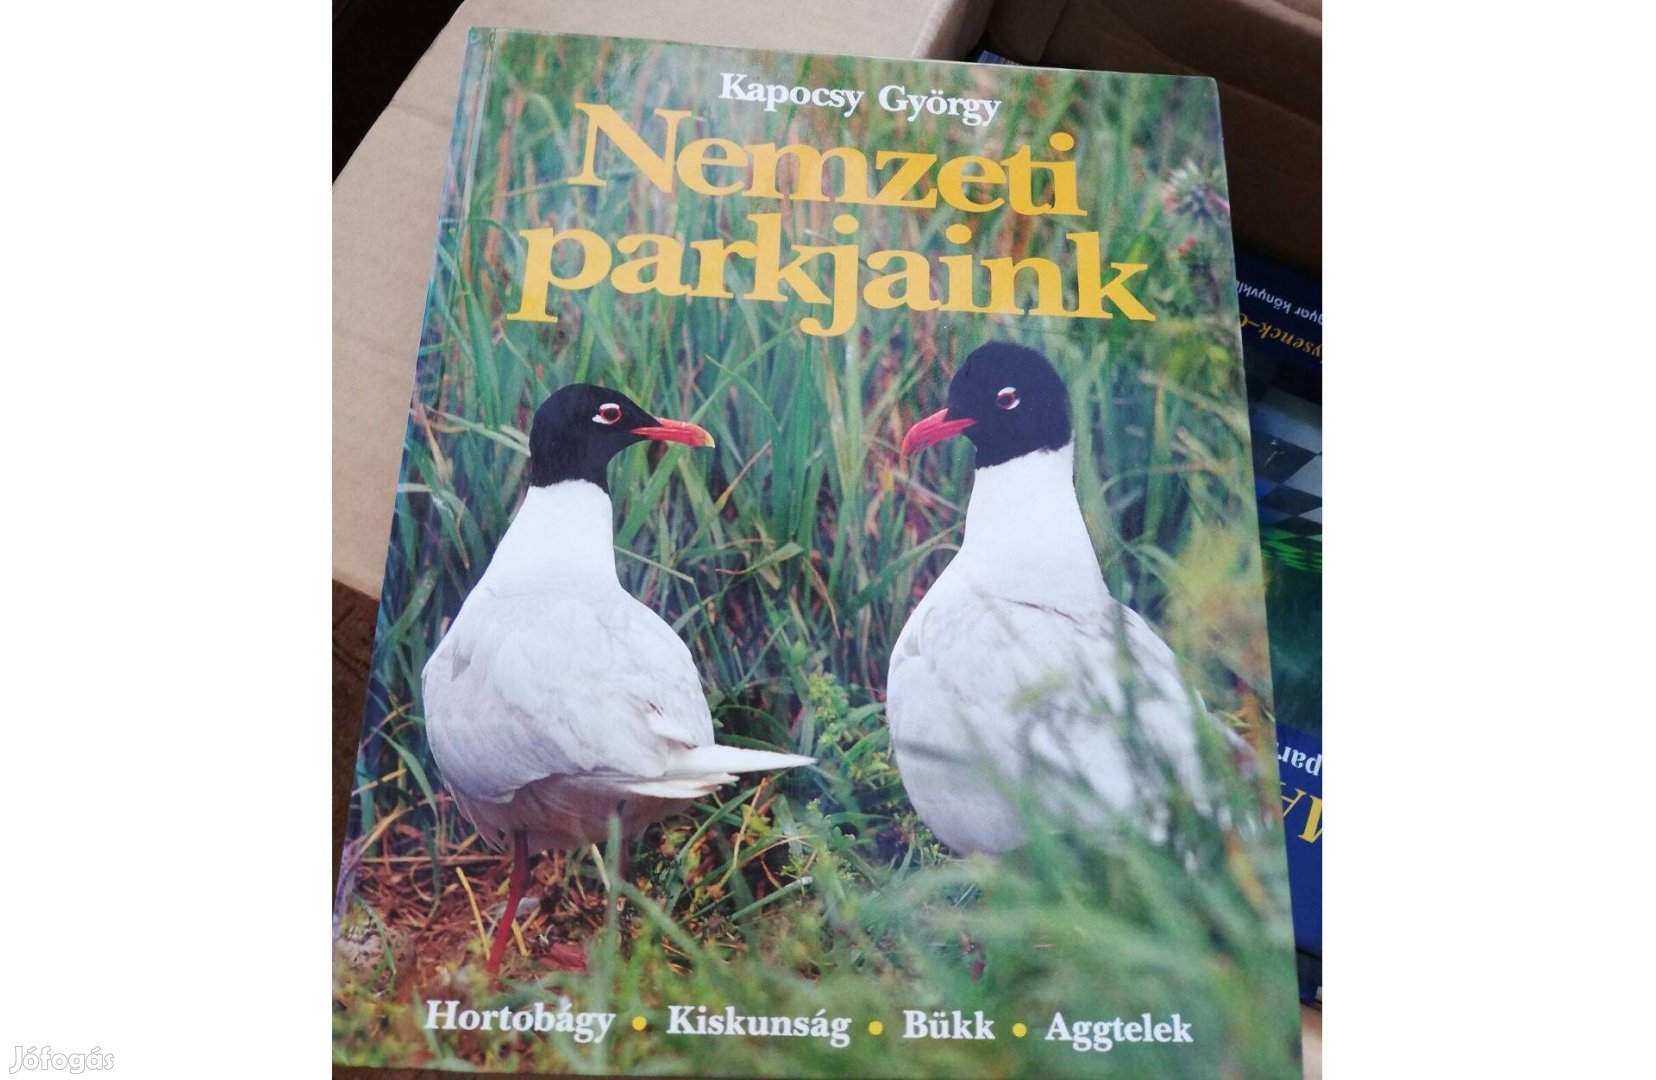 Kapocsy György - Nemzeti parkjaink c. könyv 500 forintért eladó